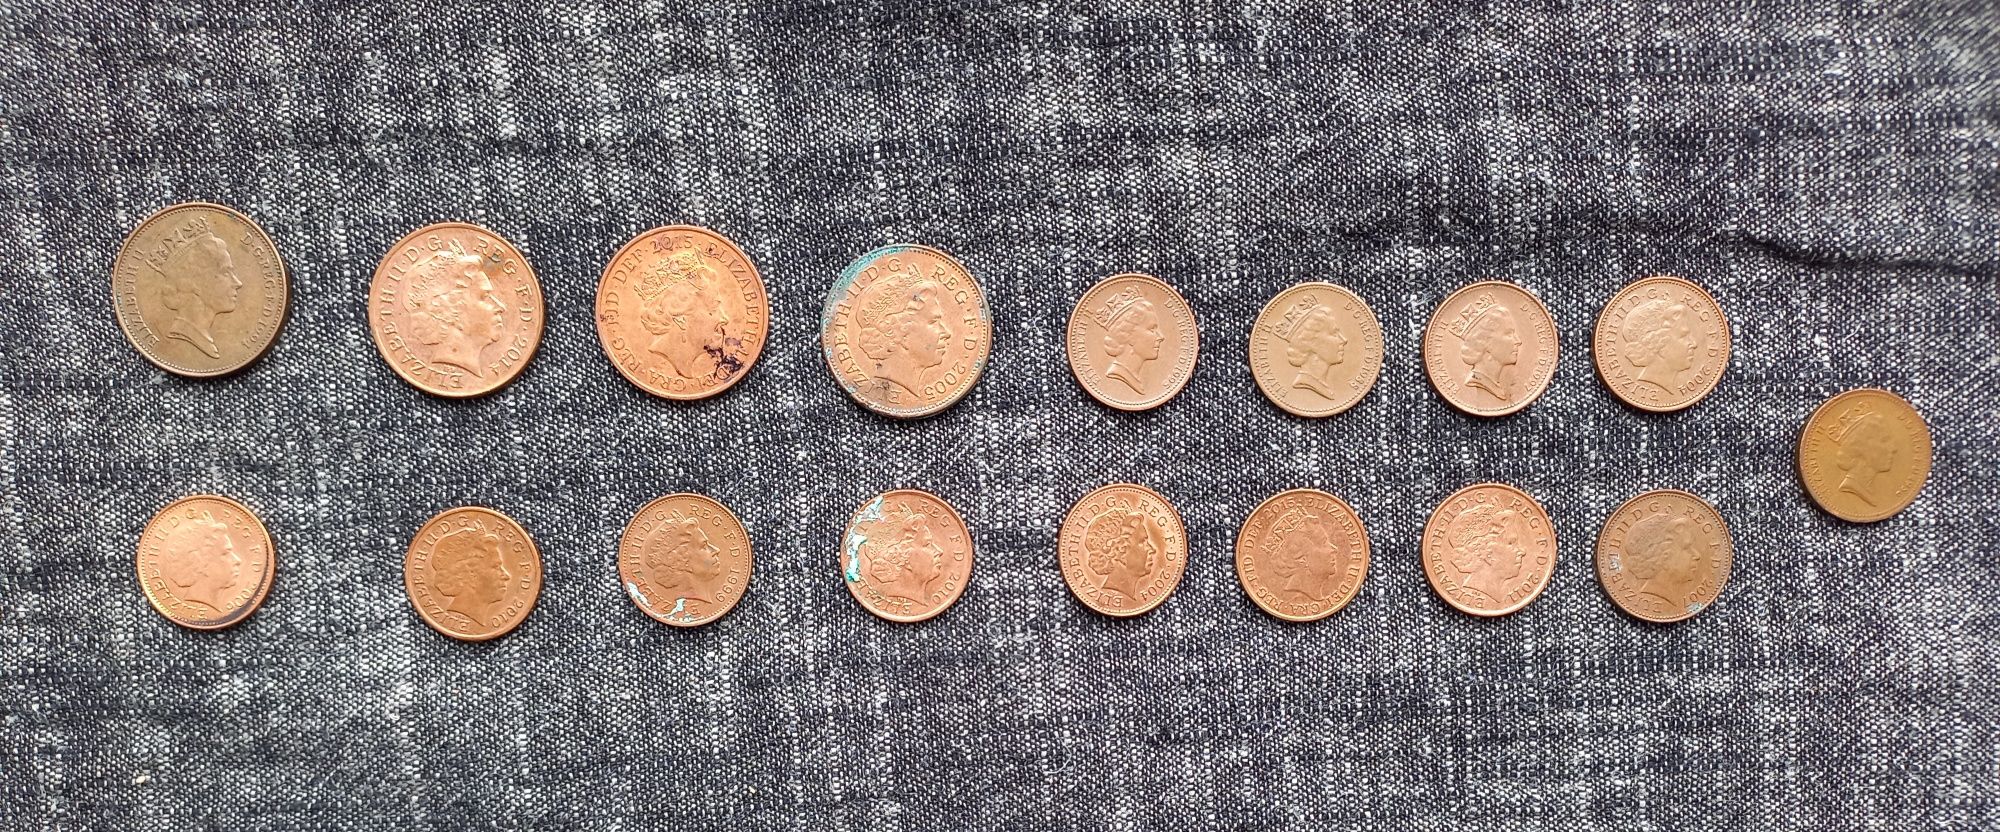 1 и 2 penny монеты